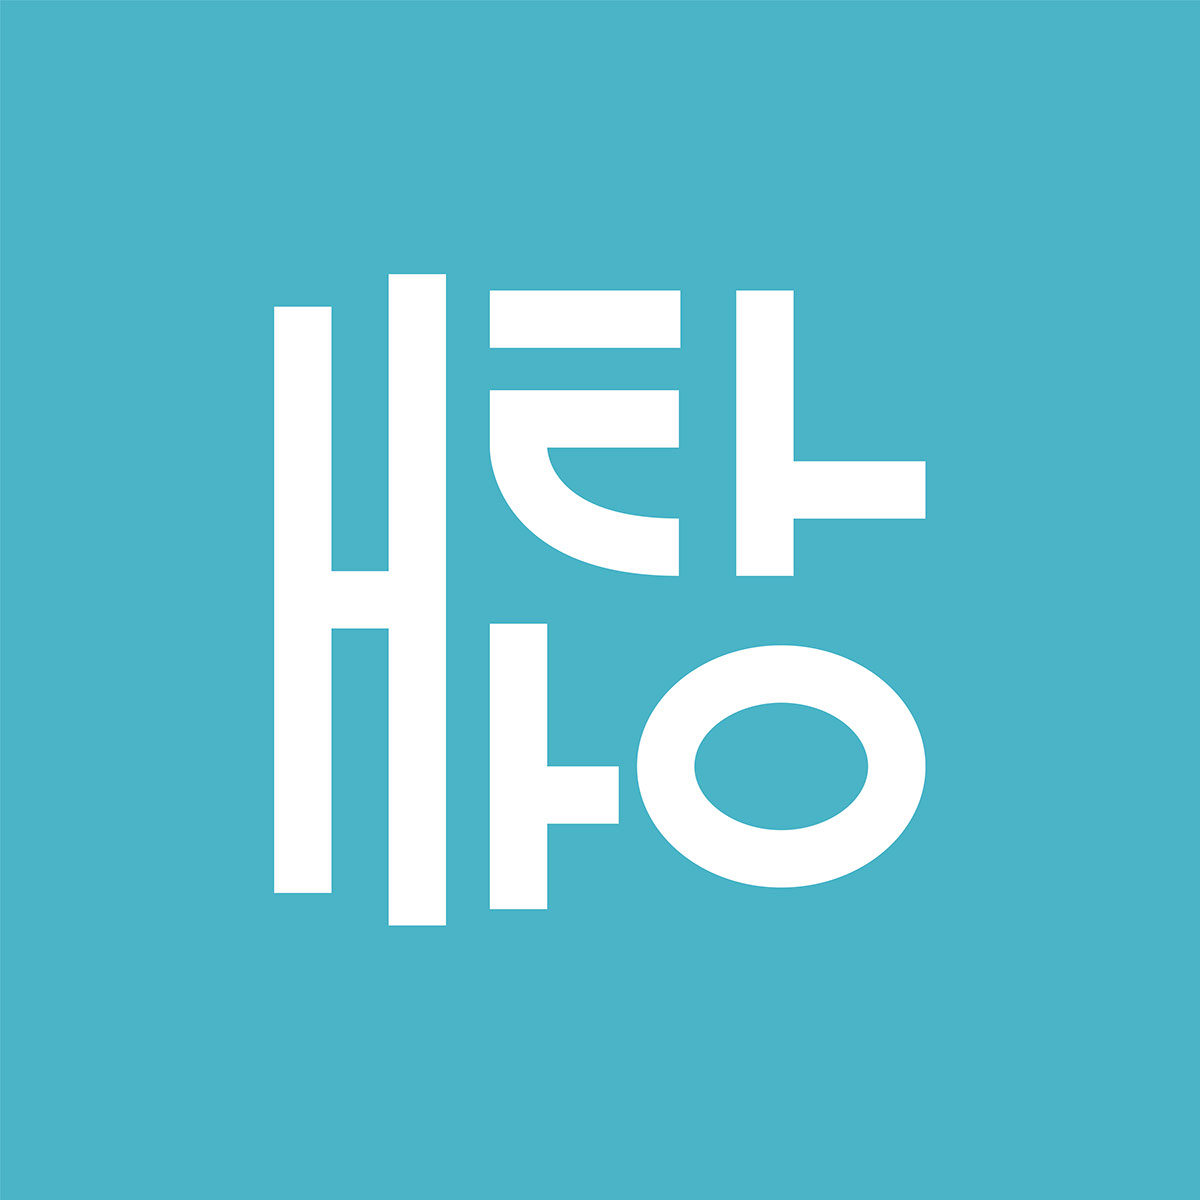 Hello - Hangul rendition image